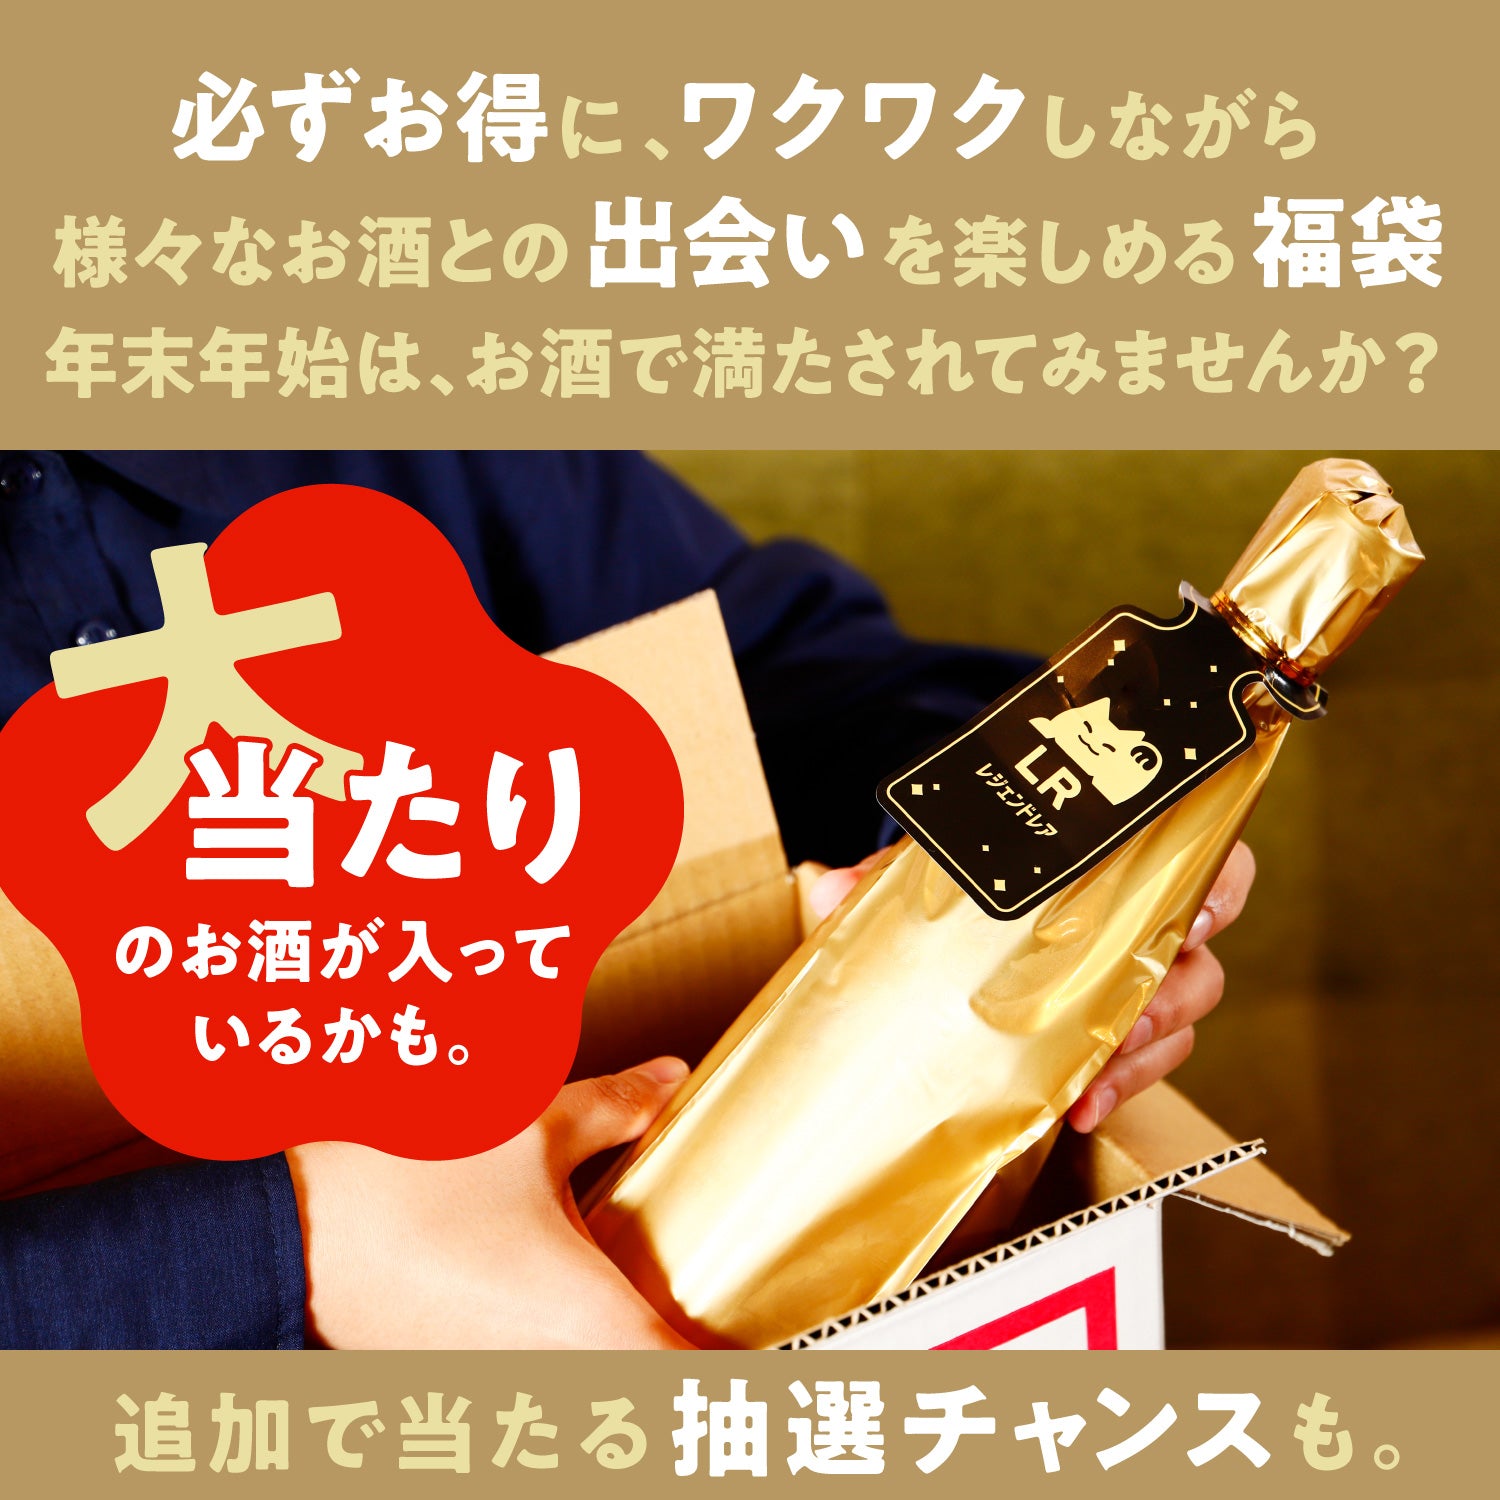 【解読者限定】酒ガチャ福袋 年明けムード最高潮プラン